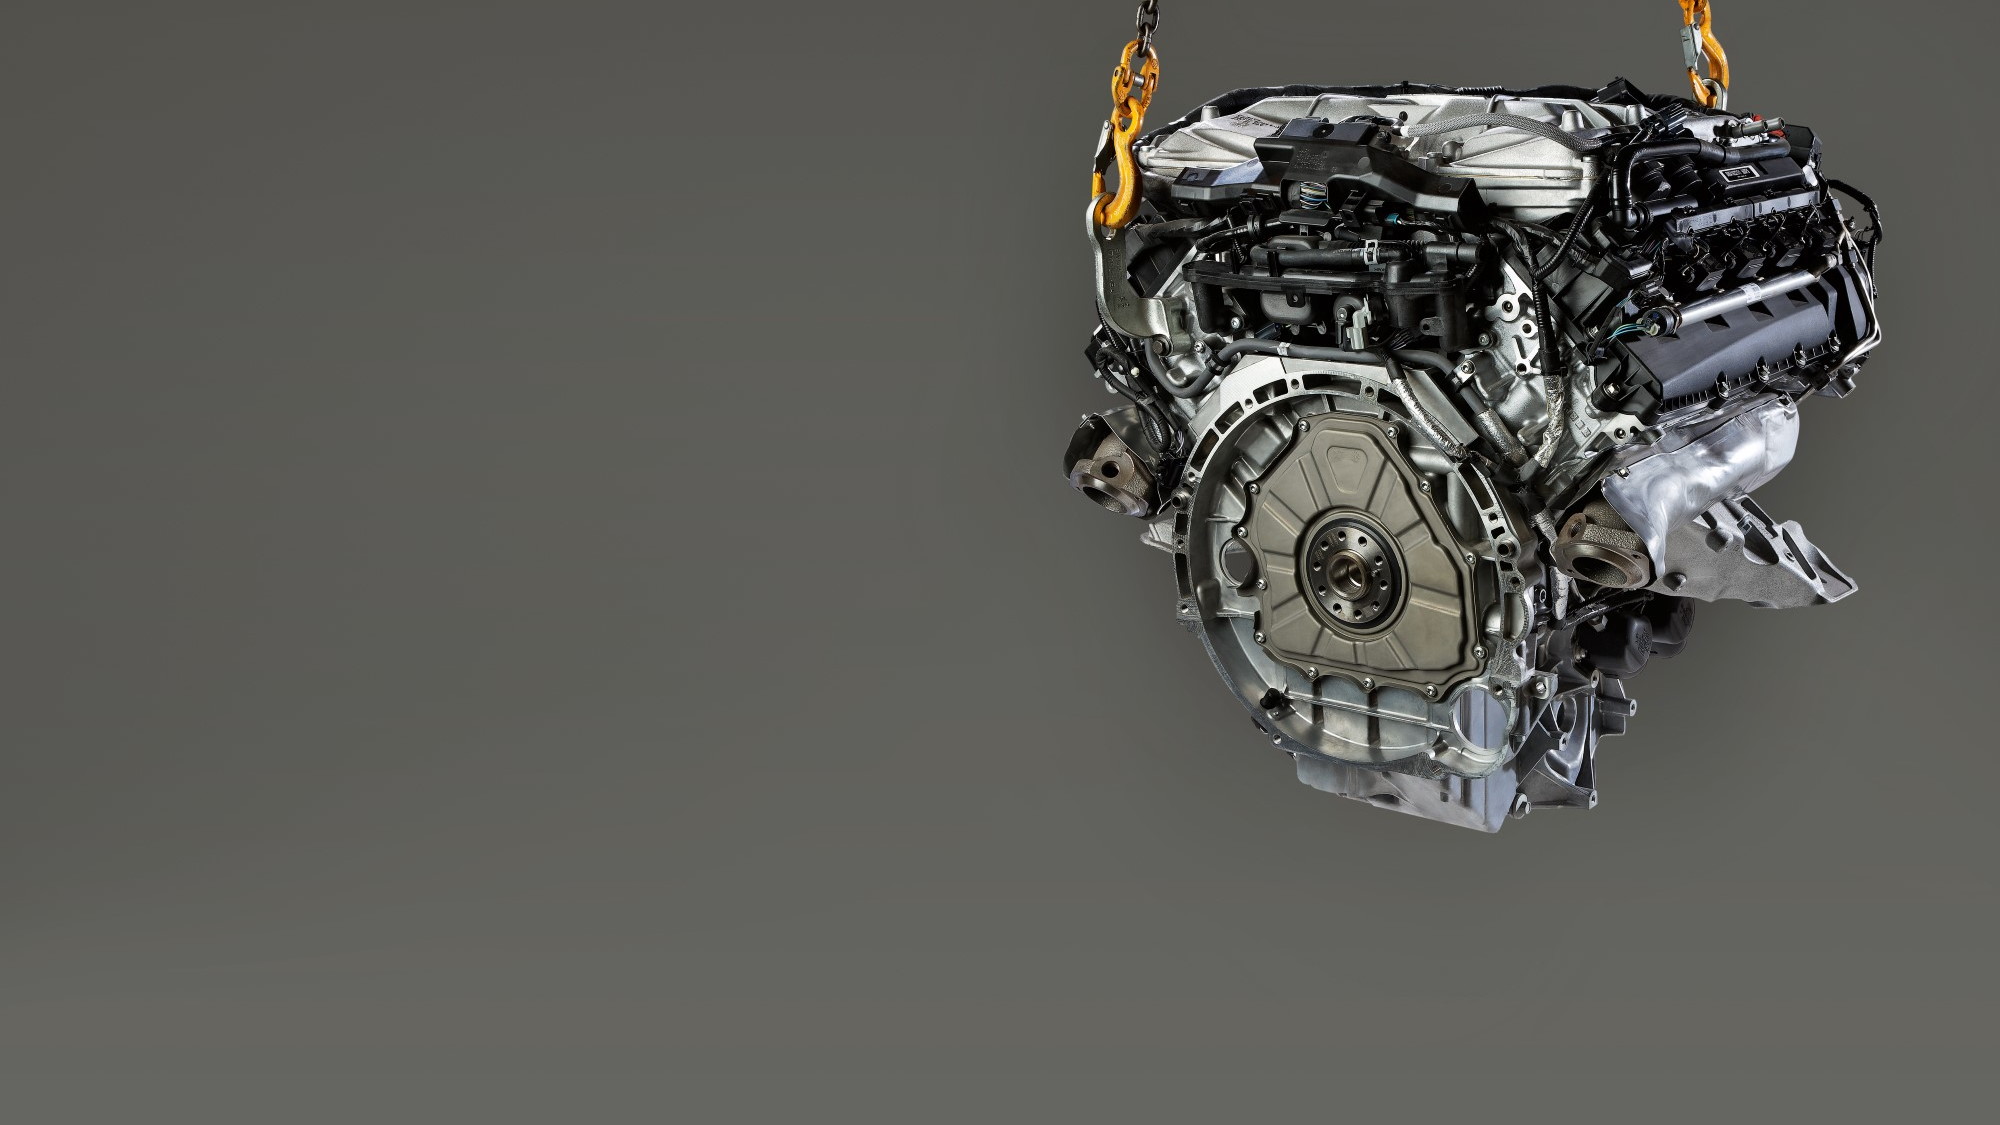 Jaguar AJ133 Gen III 5.0-liter supercharged V-8